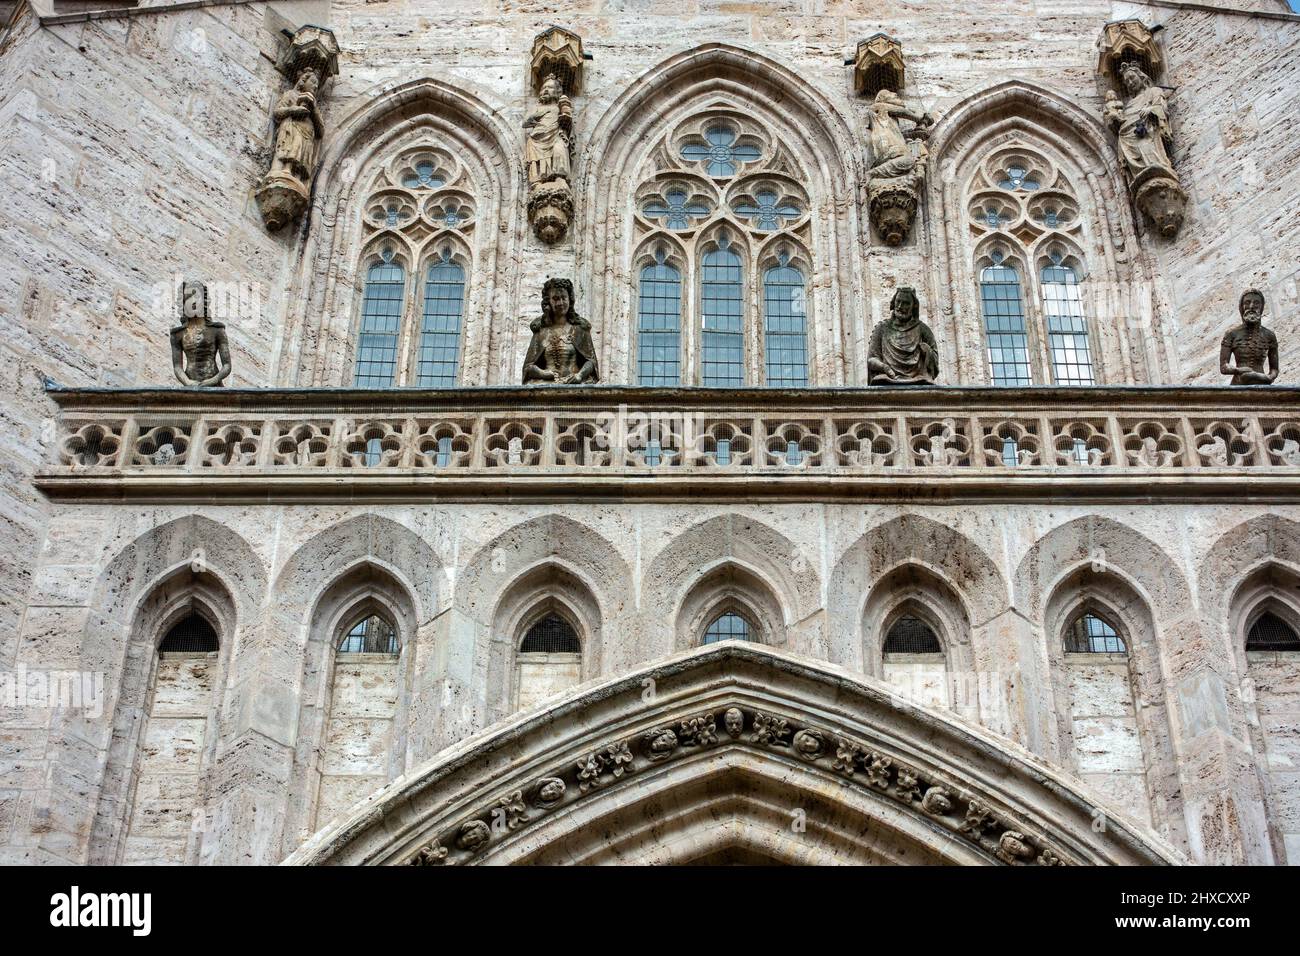 Brüstung über dem Südportal der Marienkirche die untere Reihe zeigt Kaiser Karl IV., seine vierte Frau Elisabeth von Pommern und zwei seiner Kinder. Die obere Reihe zeigt die Anbetung der Könige. Stockfoto